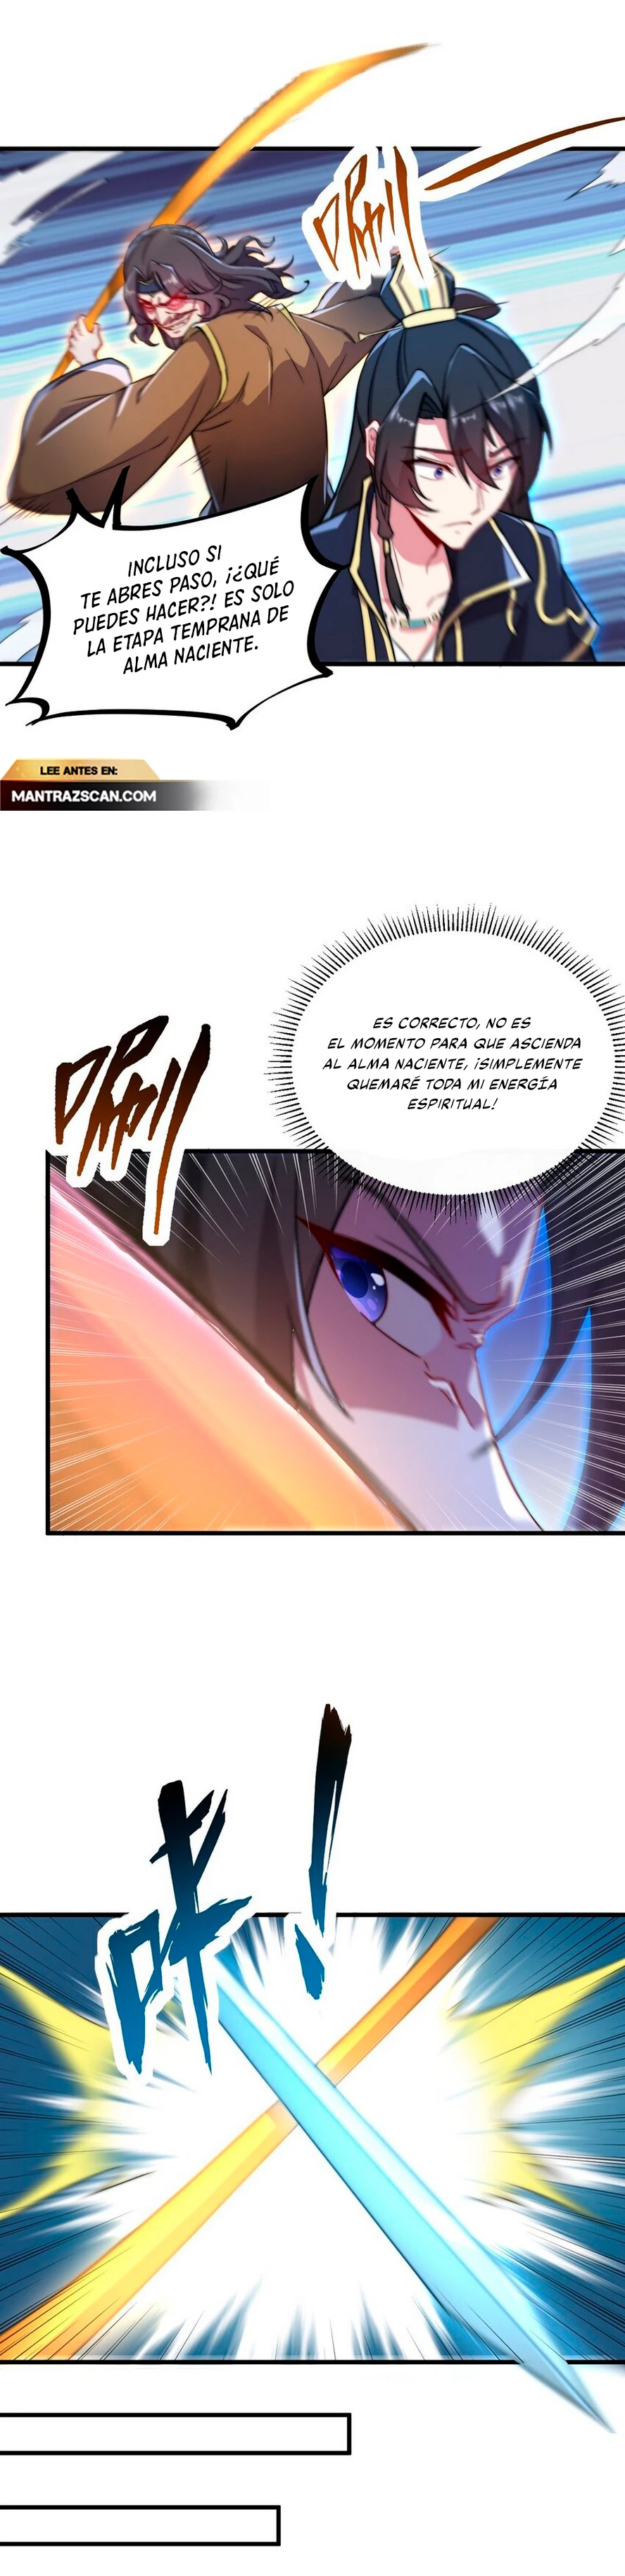 Manga Yo, el invencible villano maestro con mis aprendices Chapter 38 image number 4